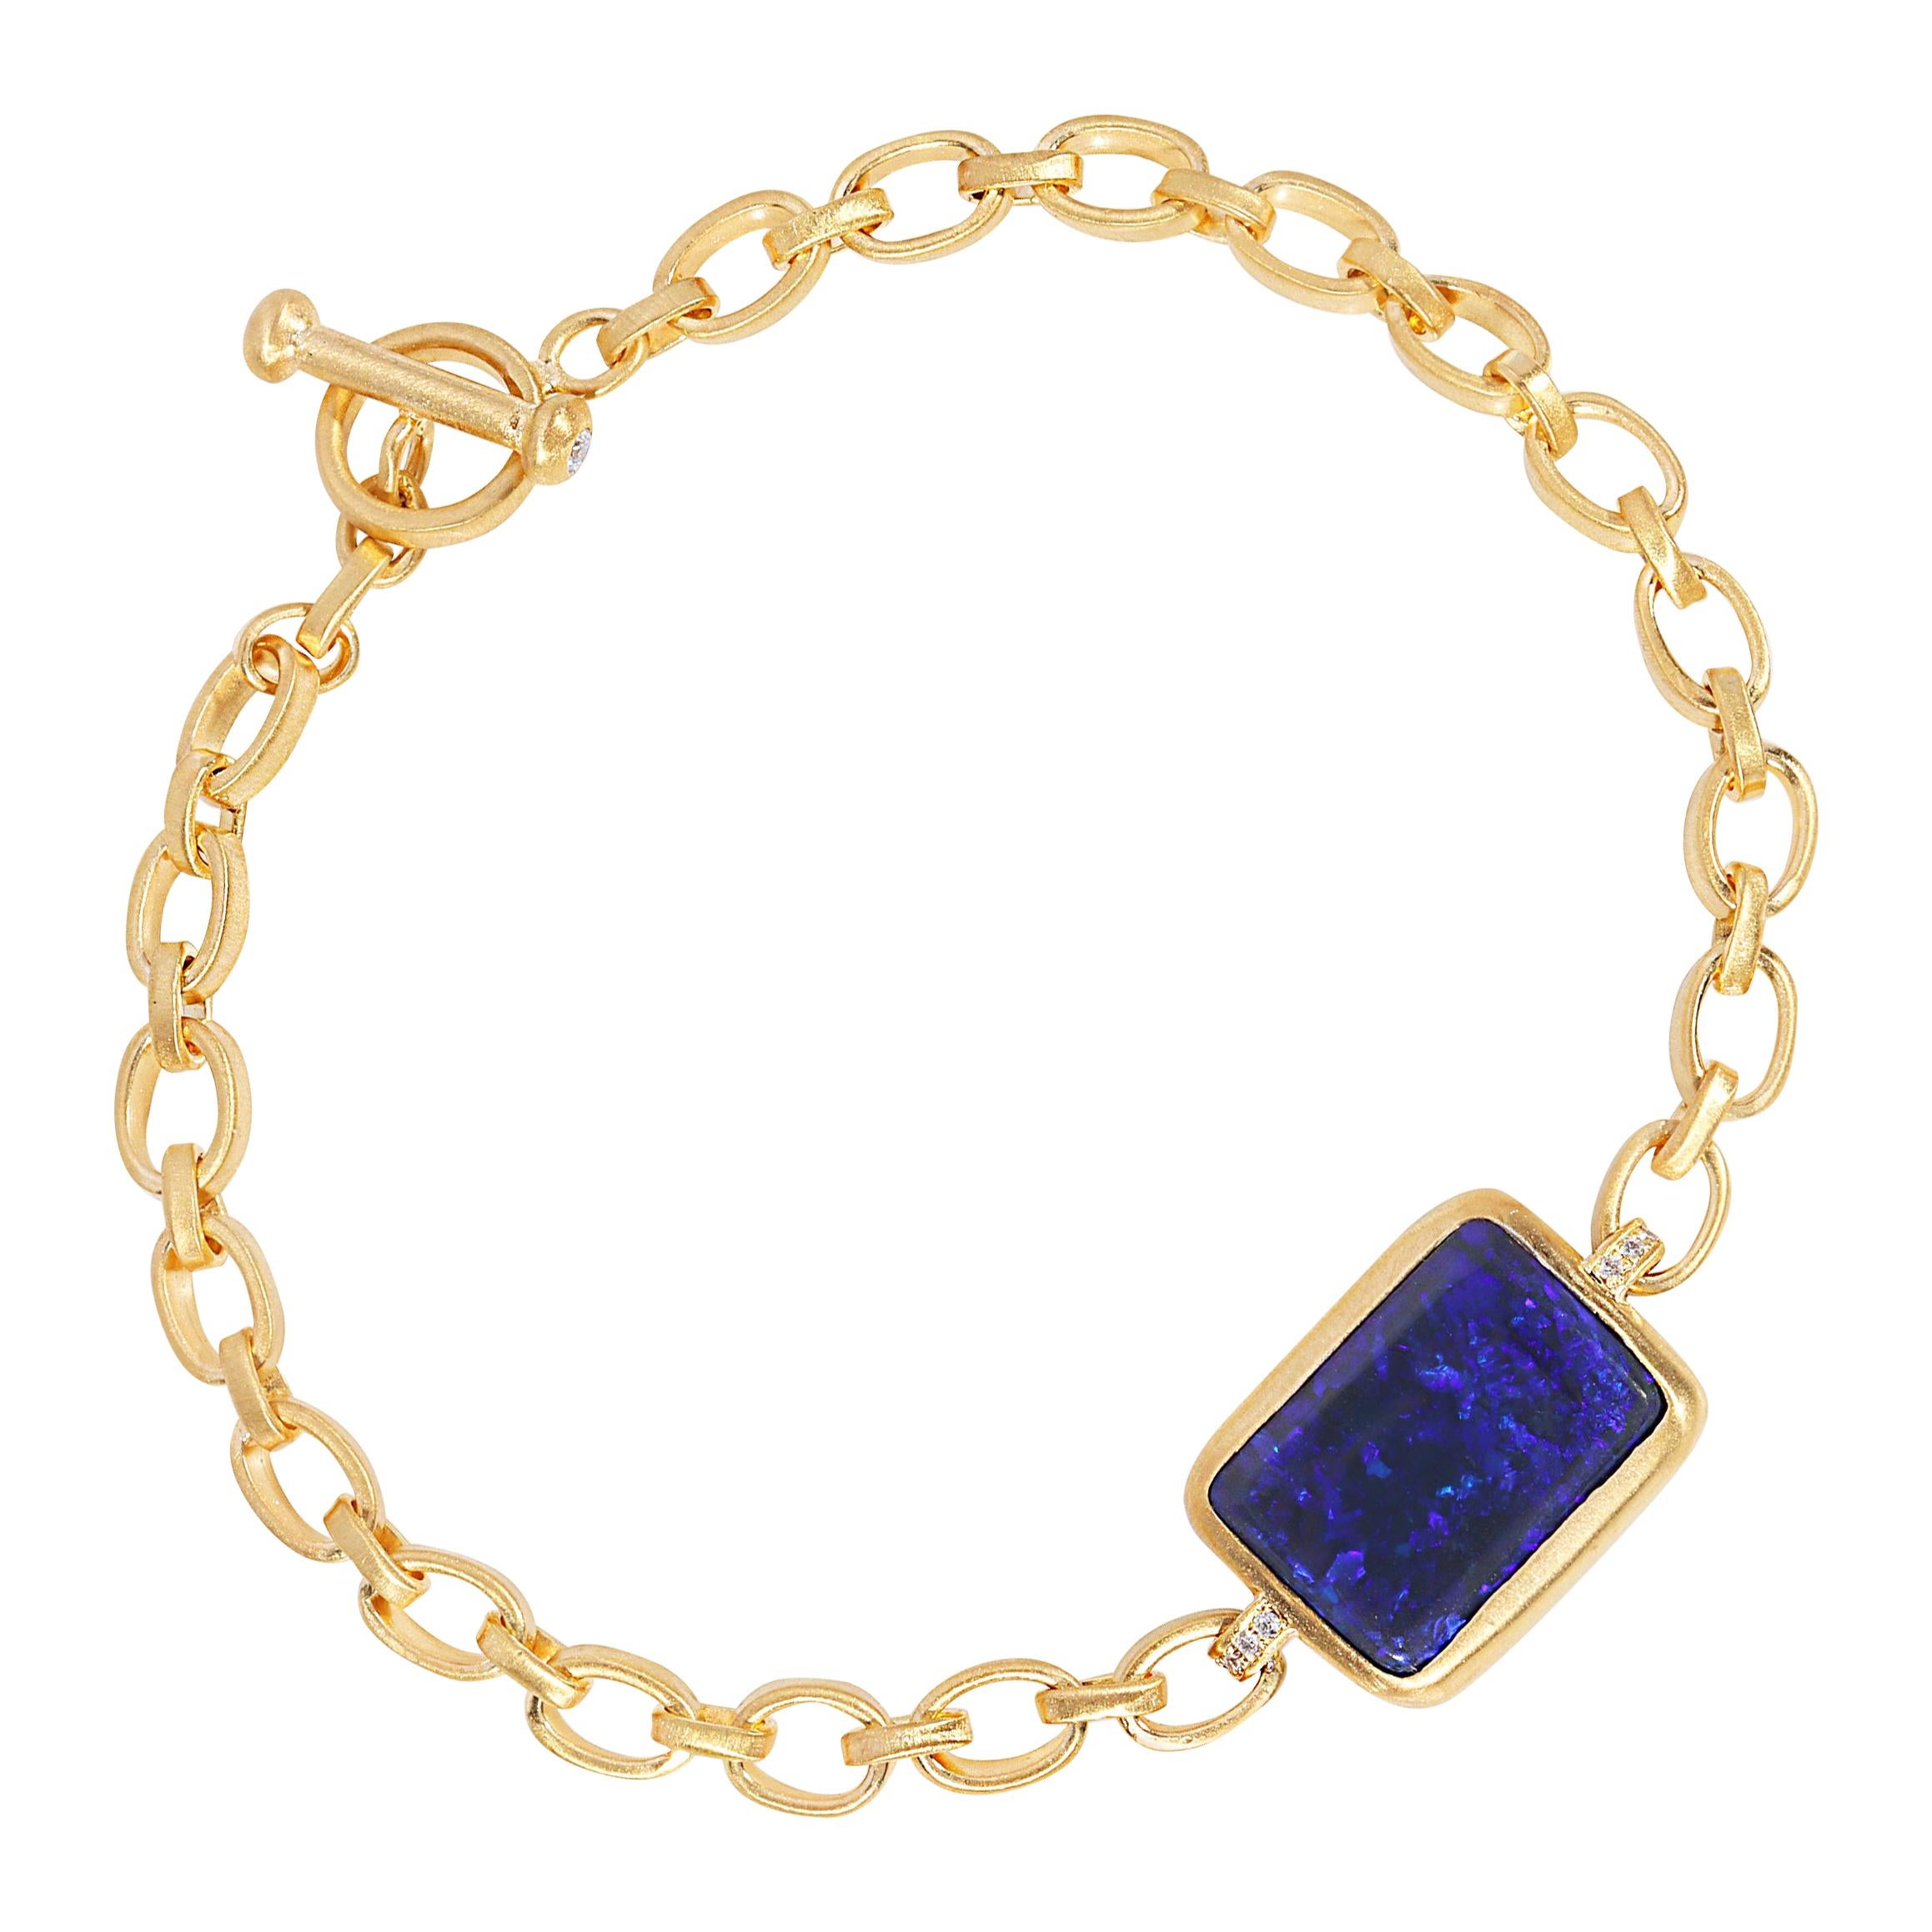 Australian Black Opal Bracelet on Handmade 18k Matte Gold Chain